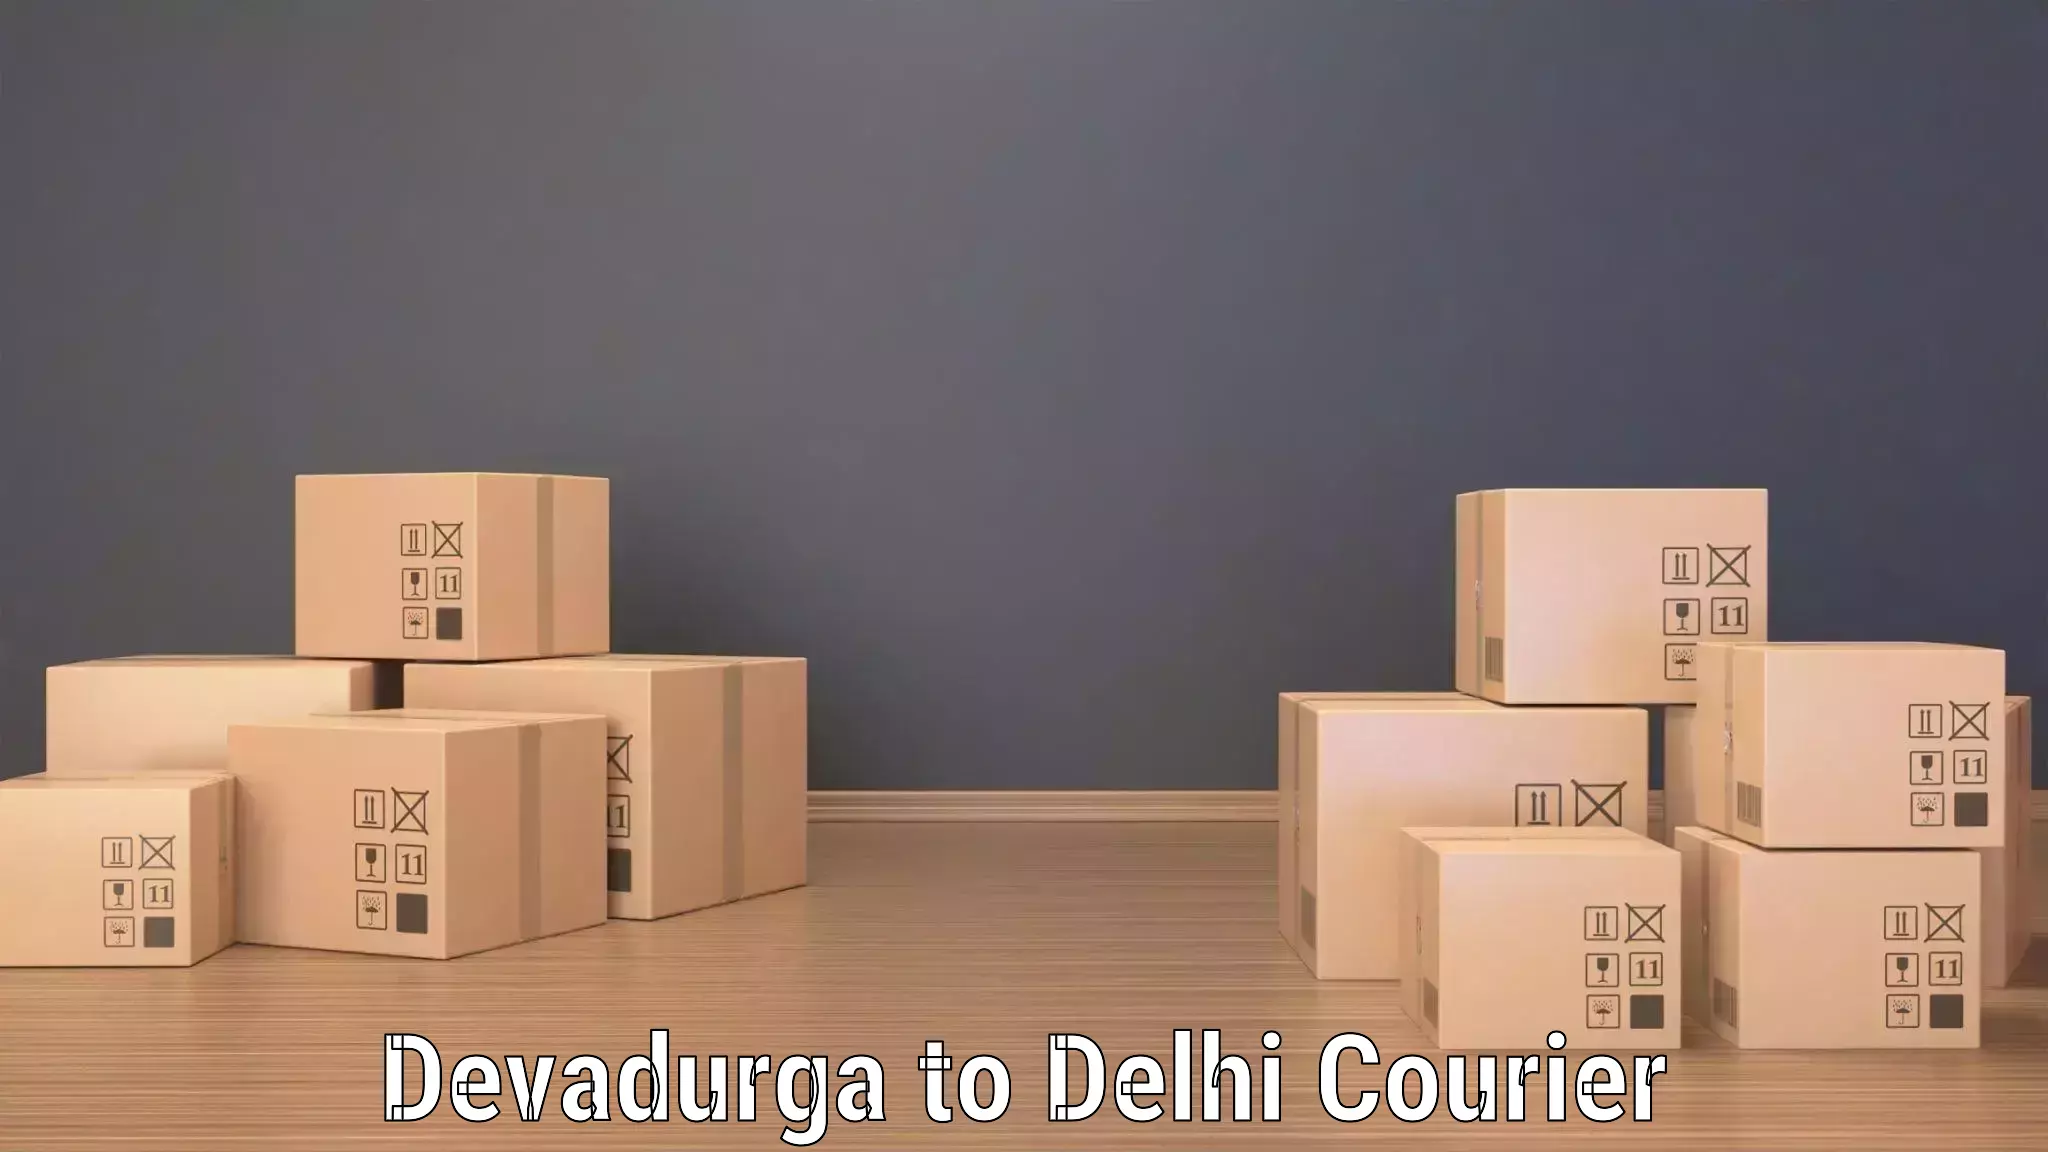 High-capacity parcel service Devadurga to East Delhi